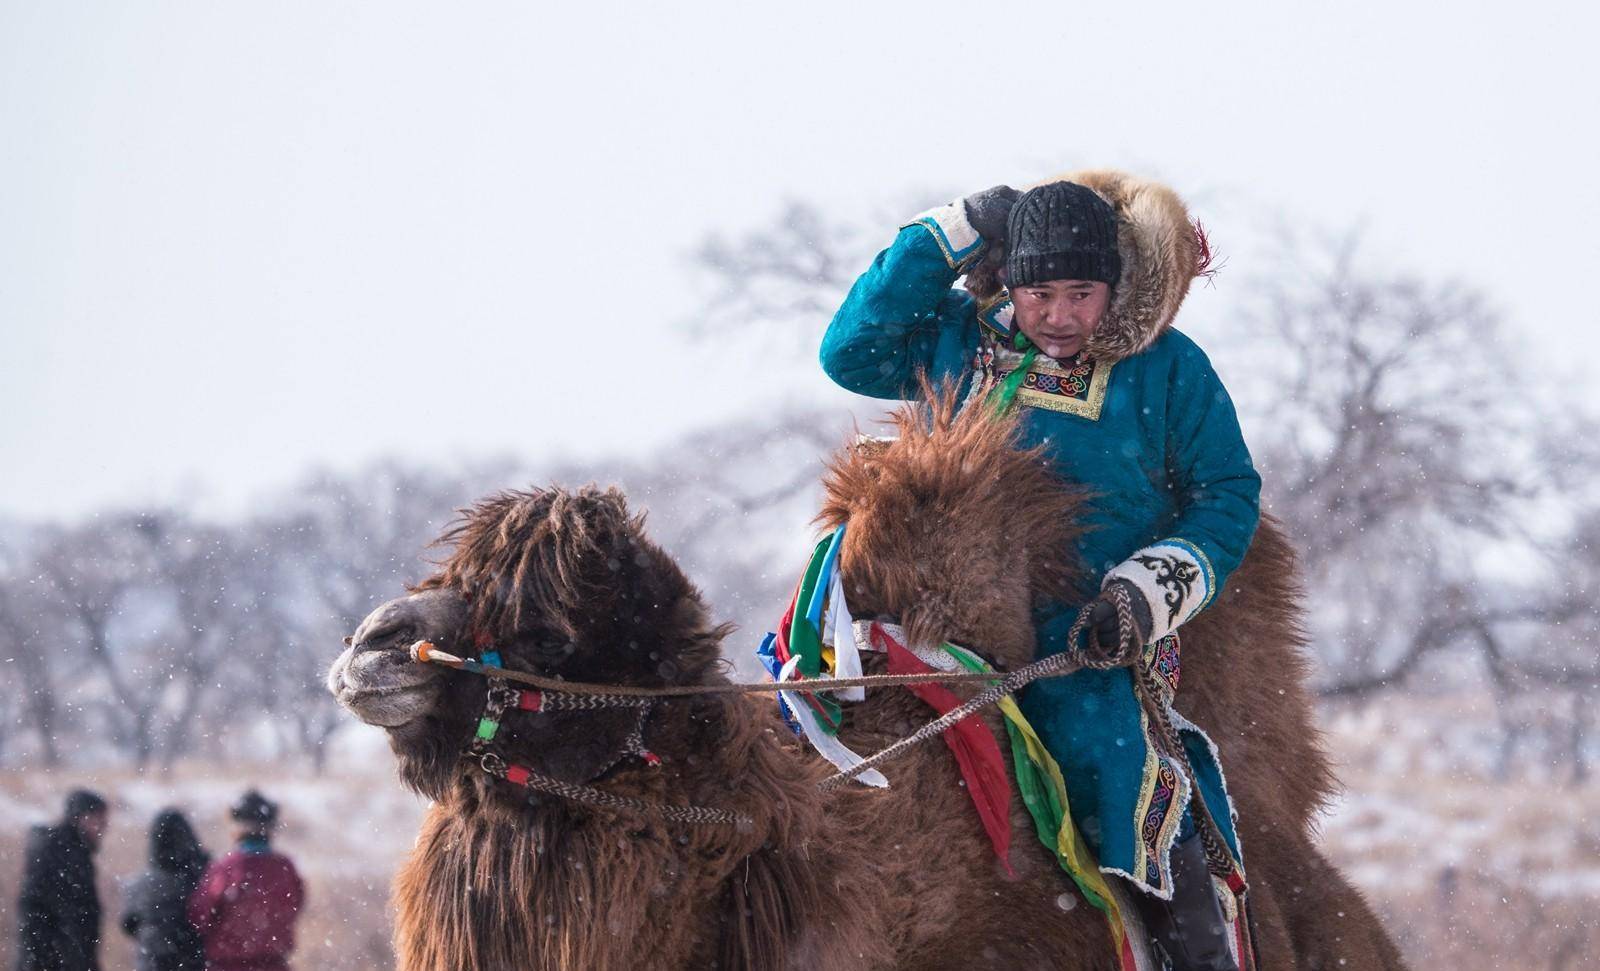 由于蒙古高原极寒,又常与骆驼,骏马相伴,服饰的主要作用当然是防寒与